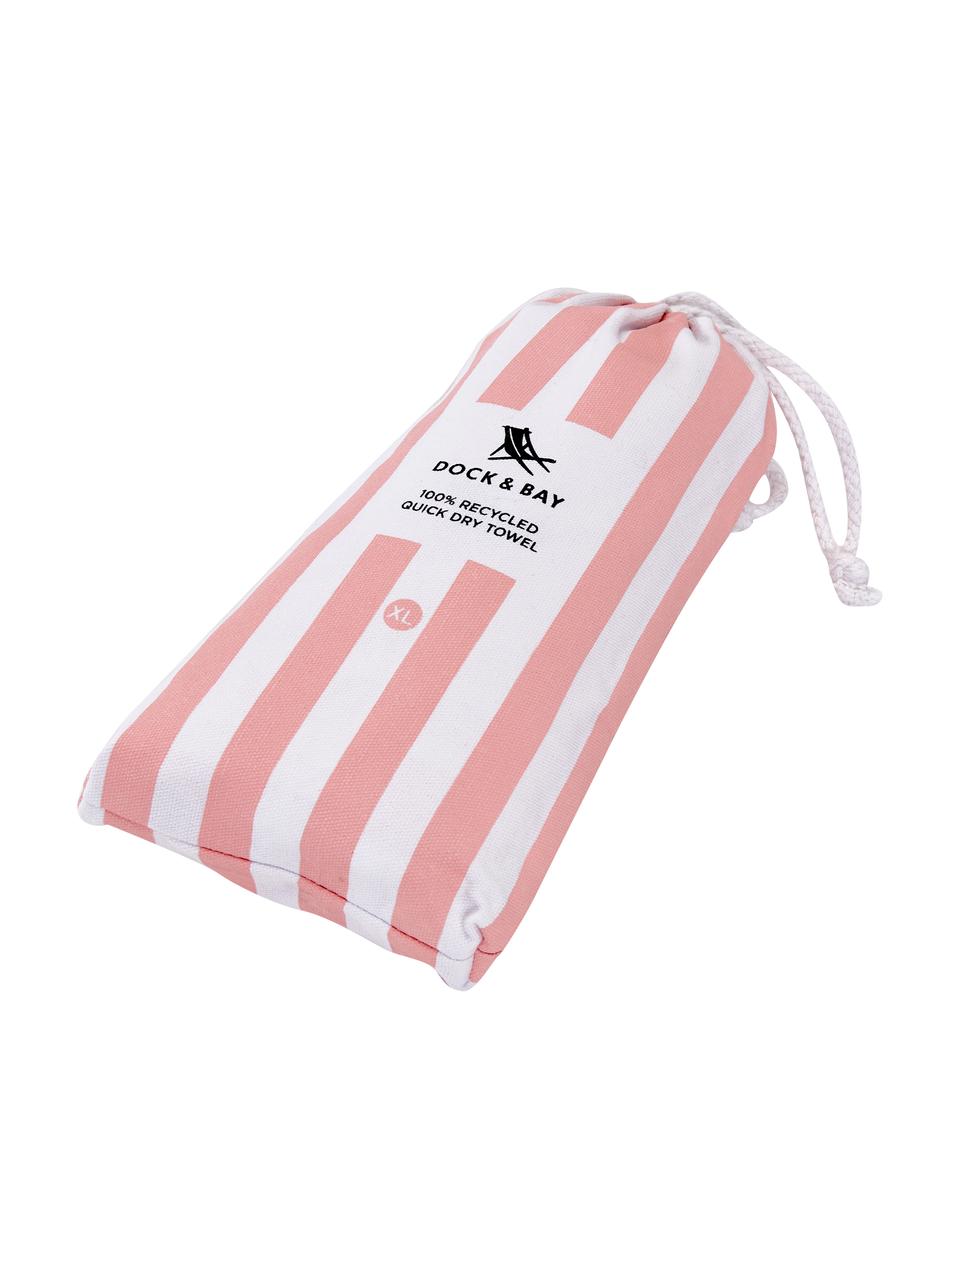 Ręcznik plażowy z mikrofibry Cabana, Blady różowy, biały, S 90 x D 200 cm